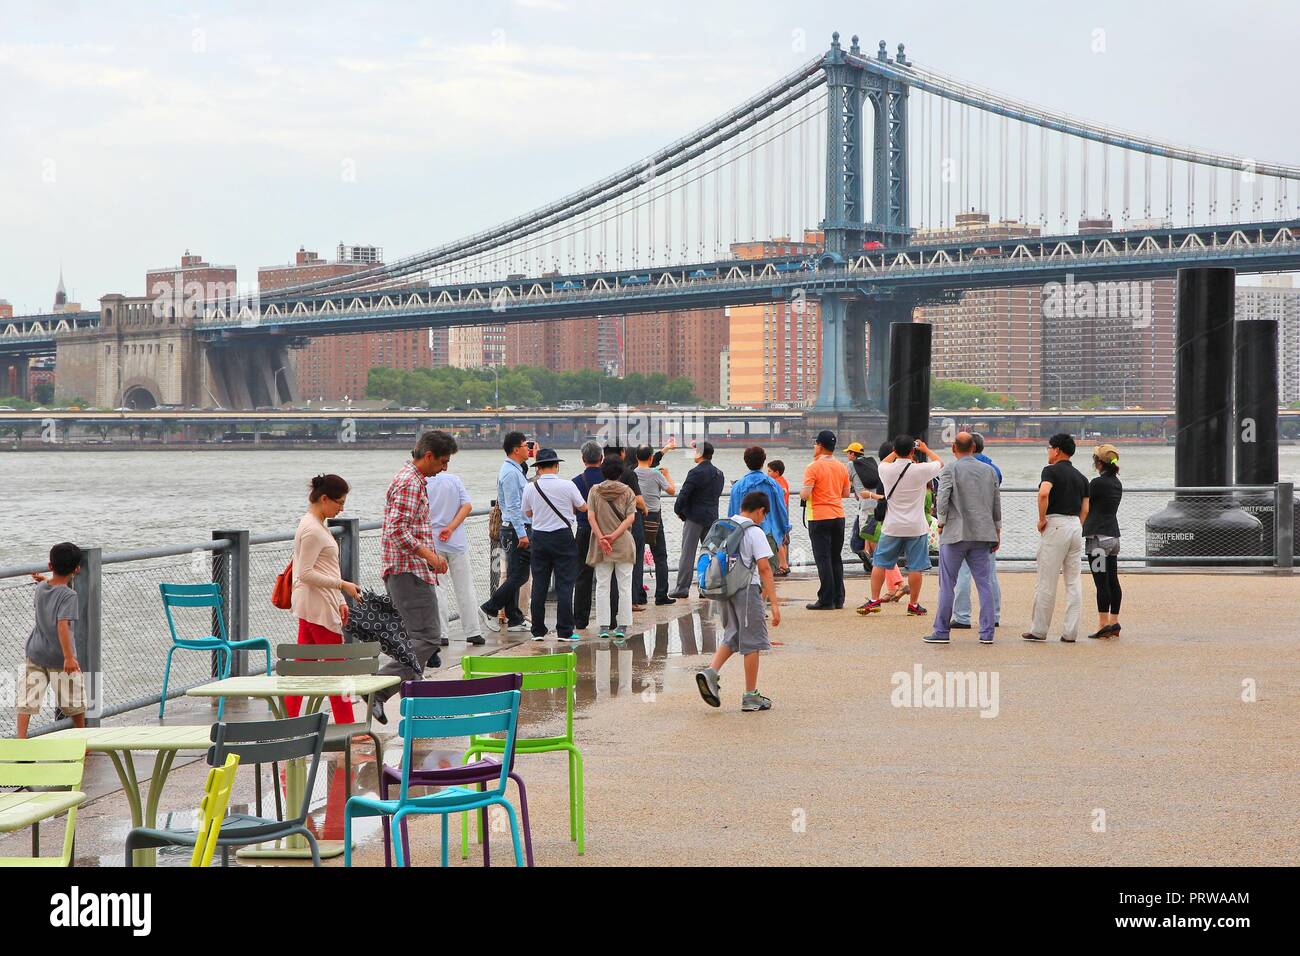 NEW YORK, USA - 3 juillet 2013 : Les gens prennent des photos de pont de Manhattan à New York. Près de 19 millions de personnes vivent en zone métropolitaine de la ville de New York. Banque D'Images